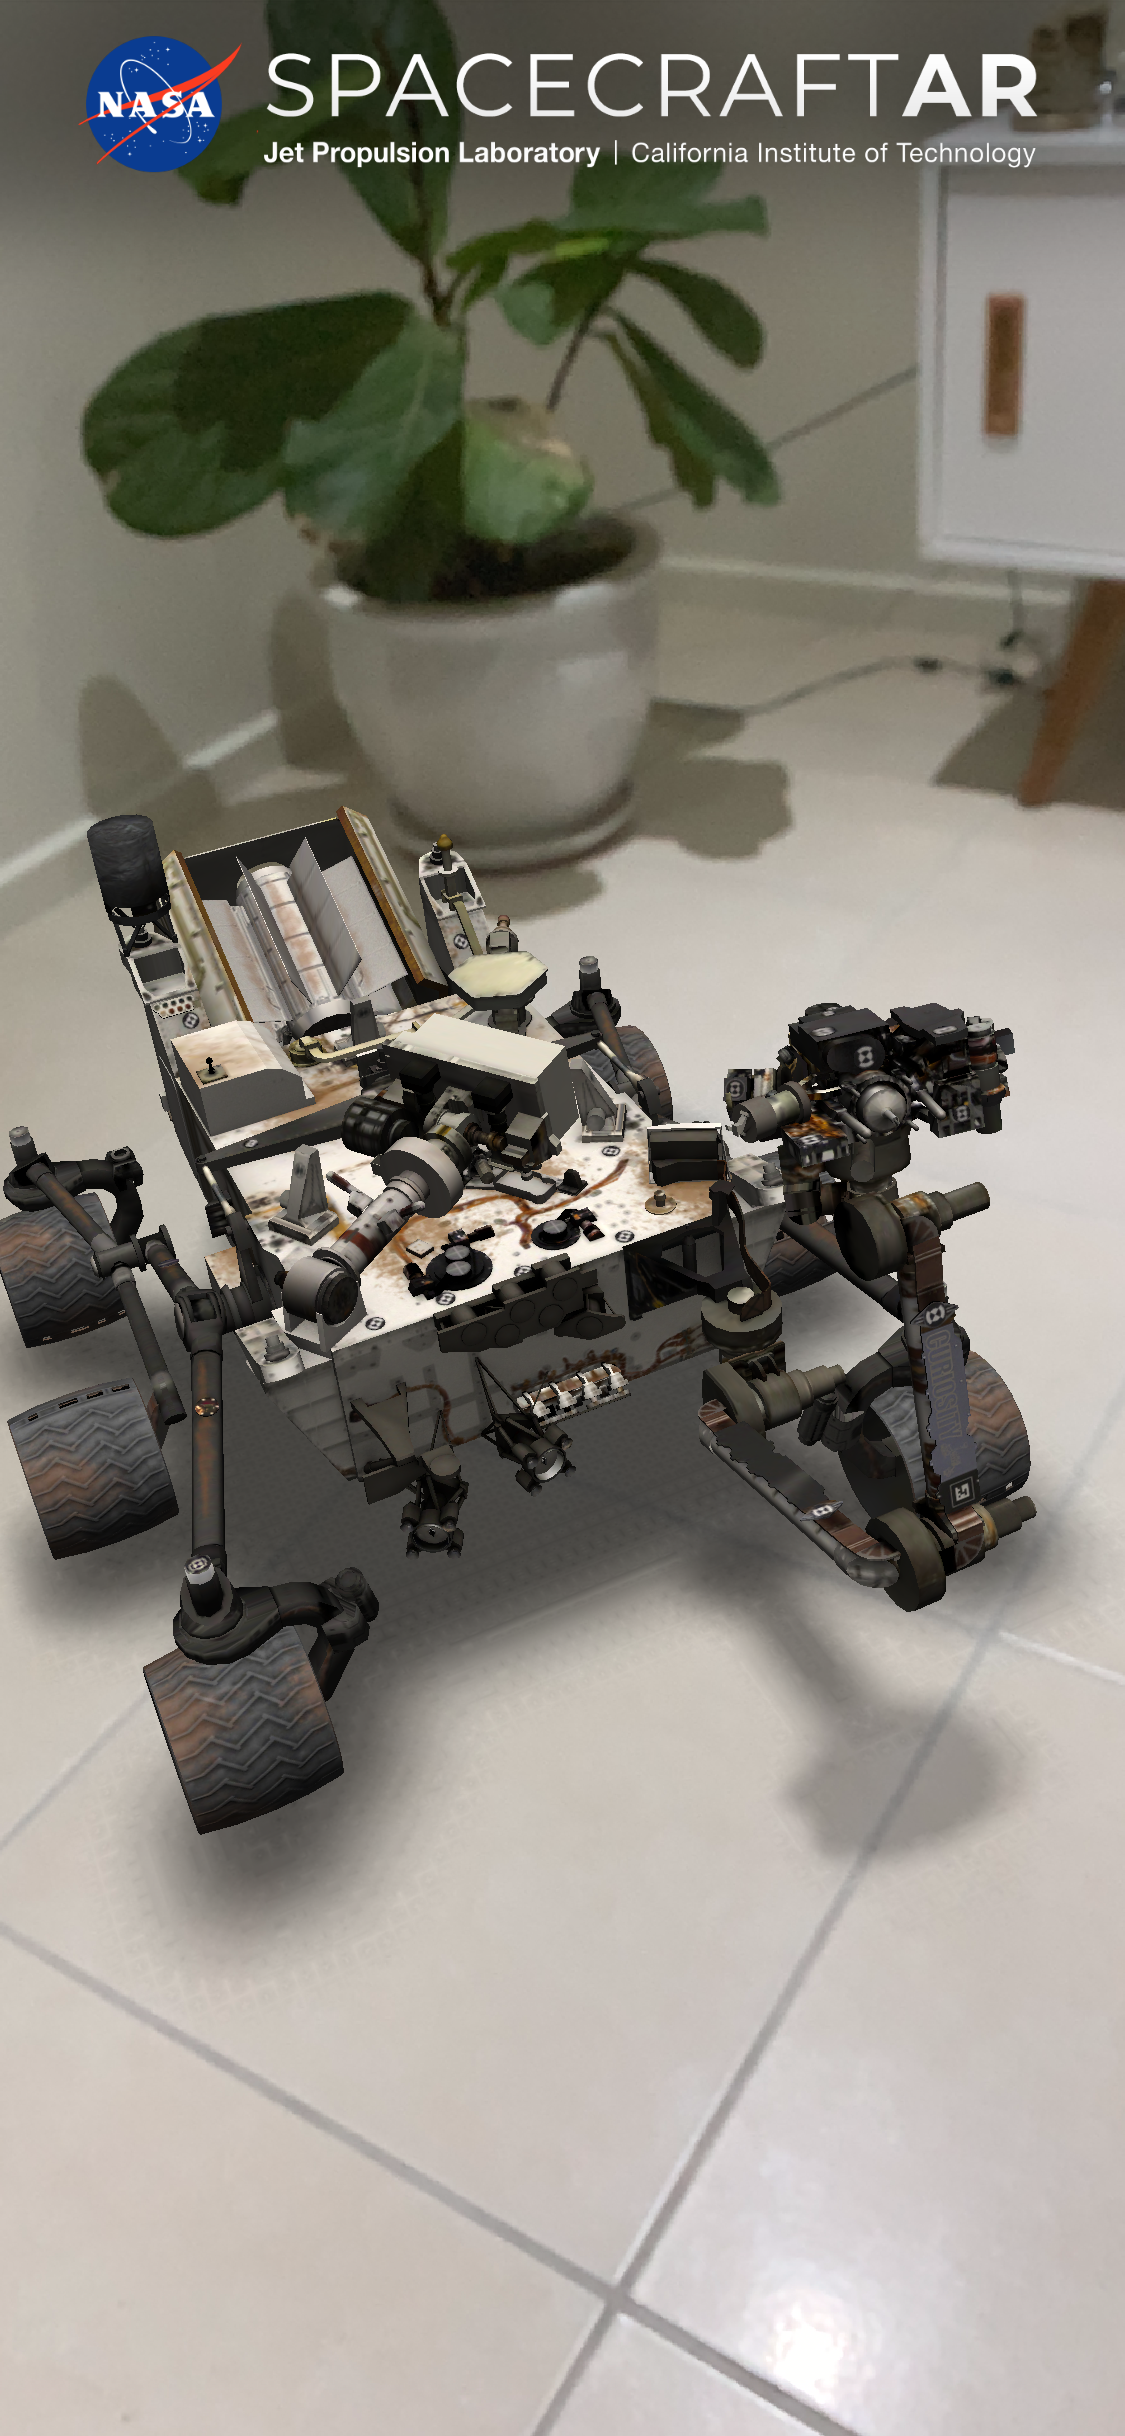 NASA Rover